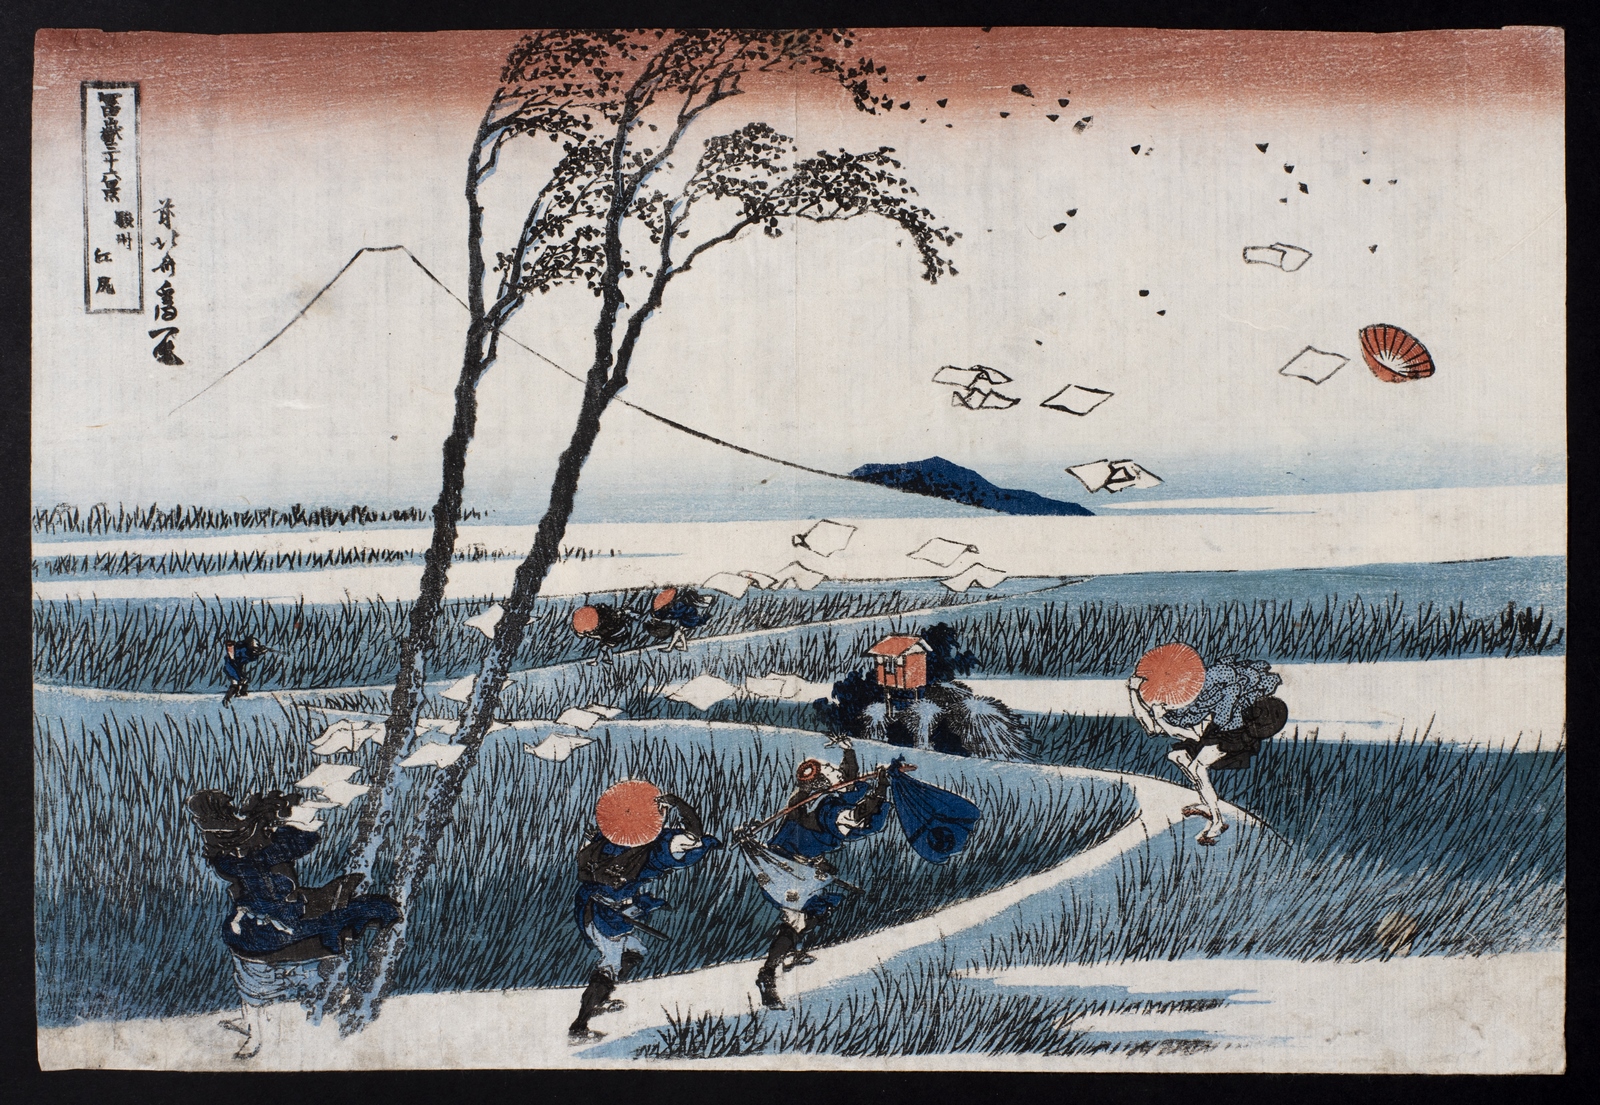 Katsushika Hokusai, Ejiri nella Provincia di Suruga, dalla serie Le 36 vedute del Monte Fuji, 1829-33 ca., collezione privata.